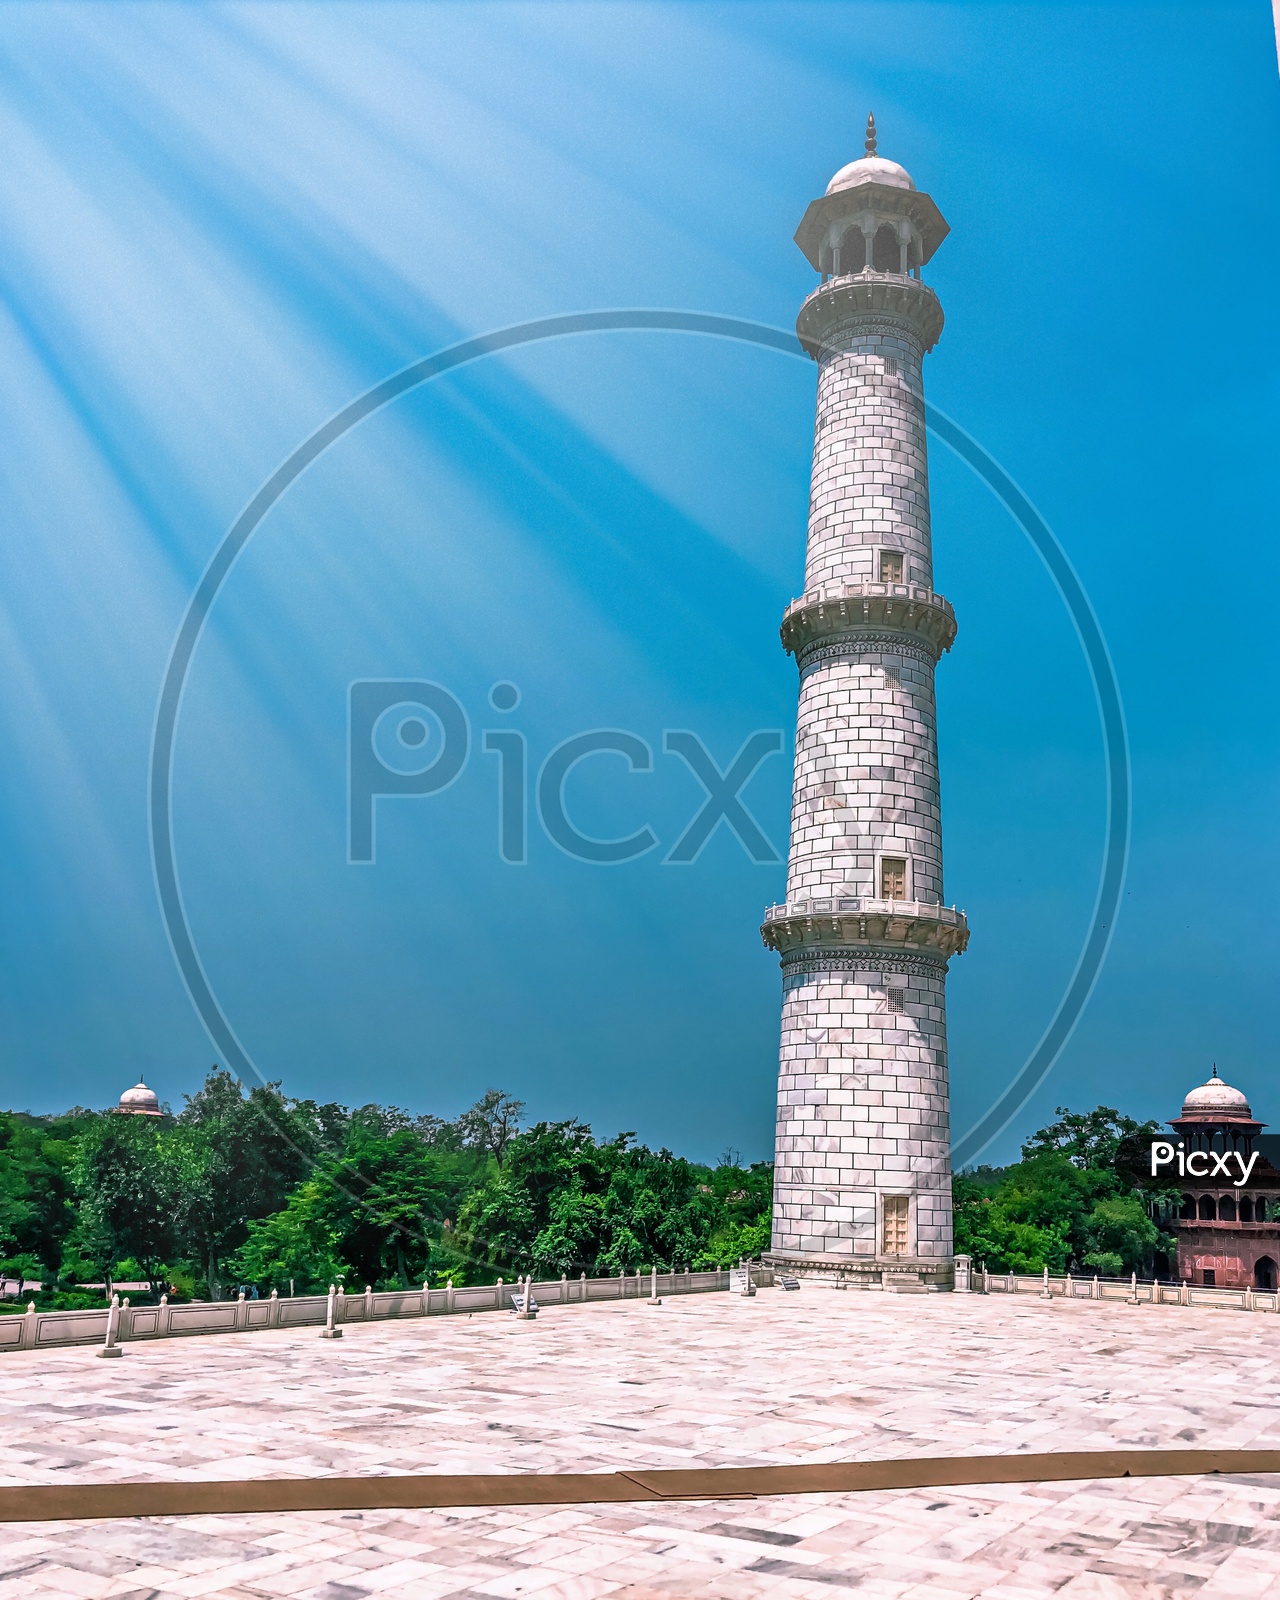 Minaret of Taj Mahal